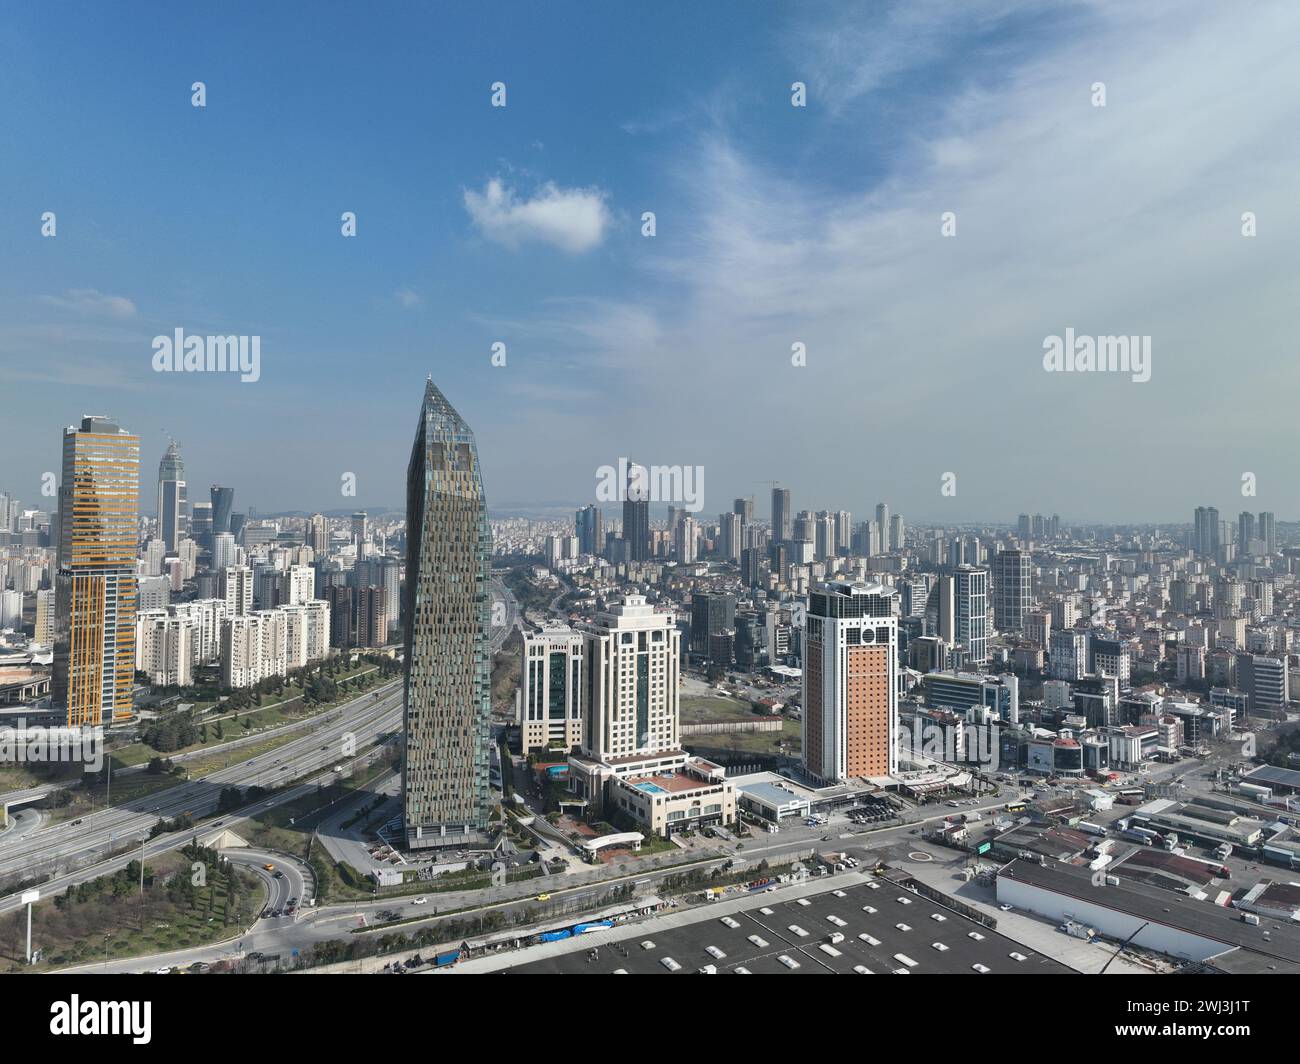 Vista aerea cinematografica dello skyline della città, edificio moderno dei grattacieli finanziari e del centro commerciale di Istanbul in Turchia Foto Stock